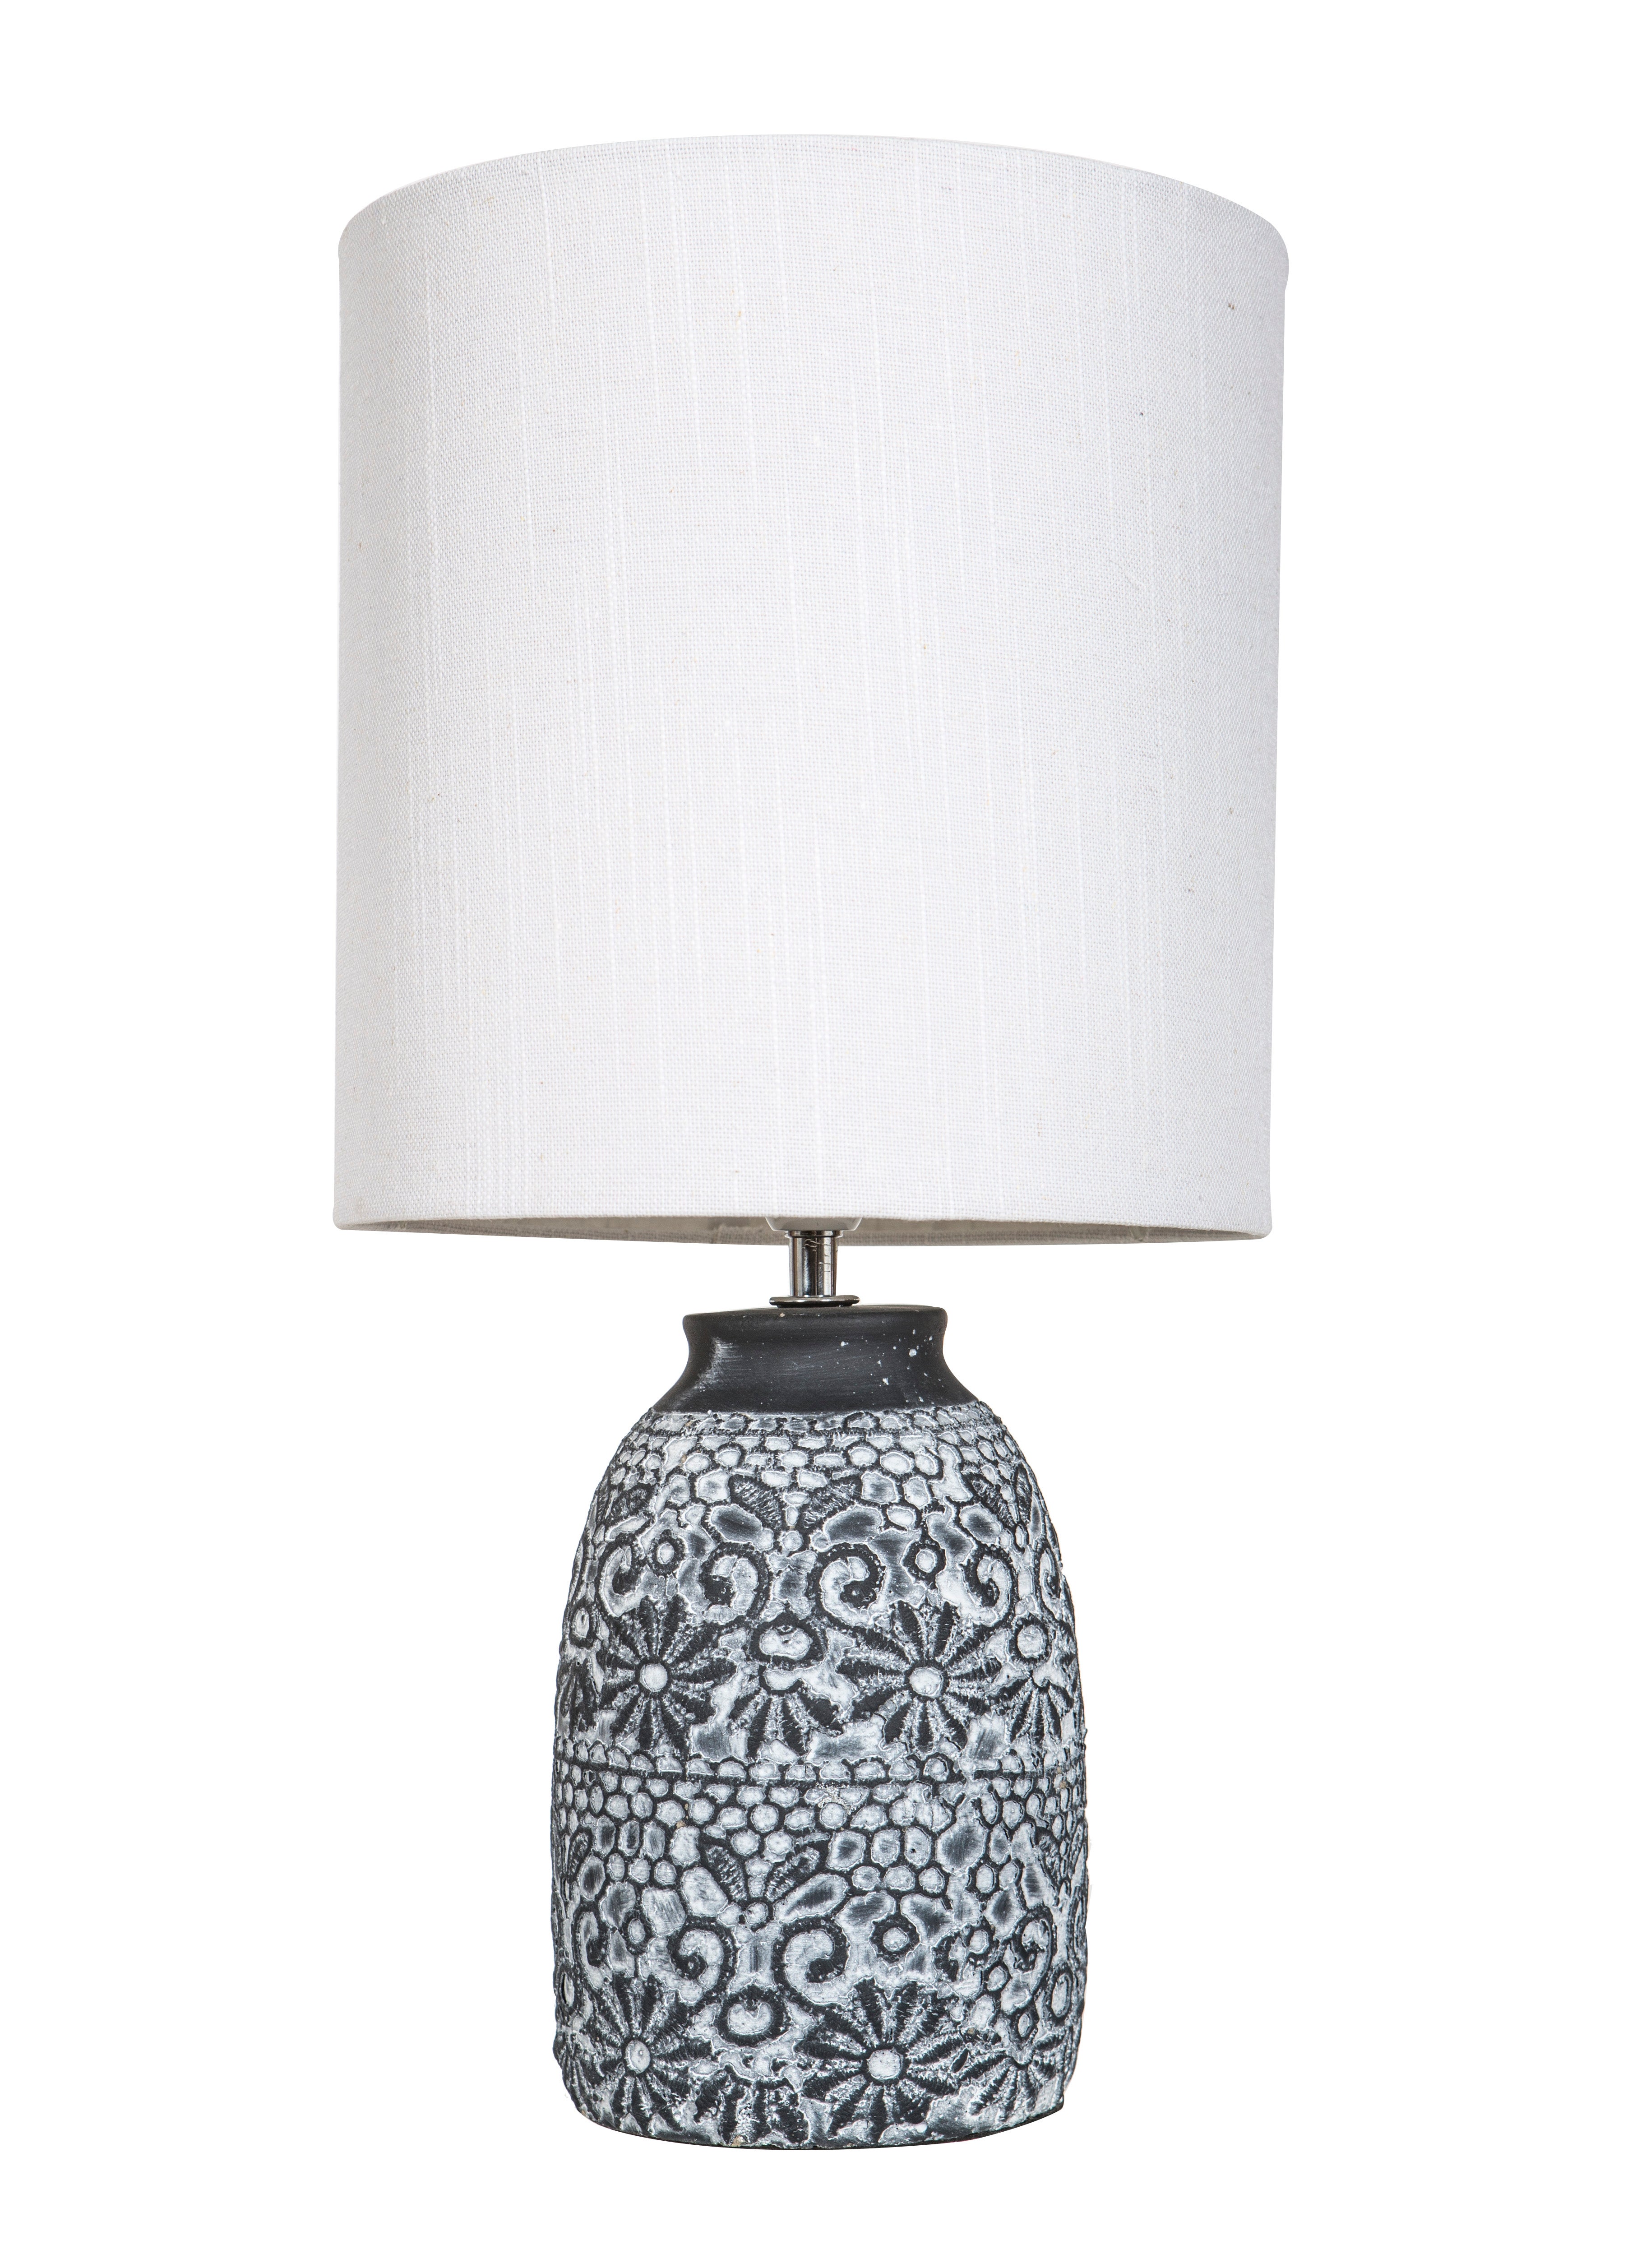 Amalfi Fleur Table Lamp Glaze Concrete Base Bedside Lamp for Living Room Bedroom